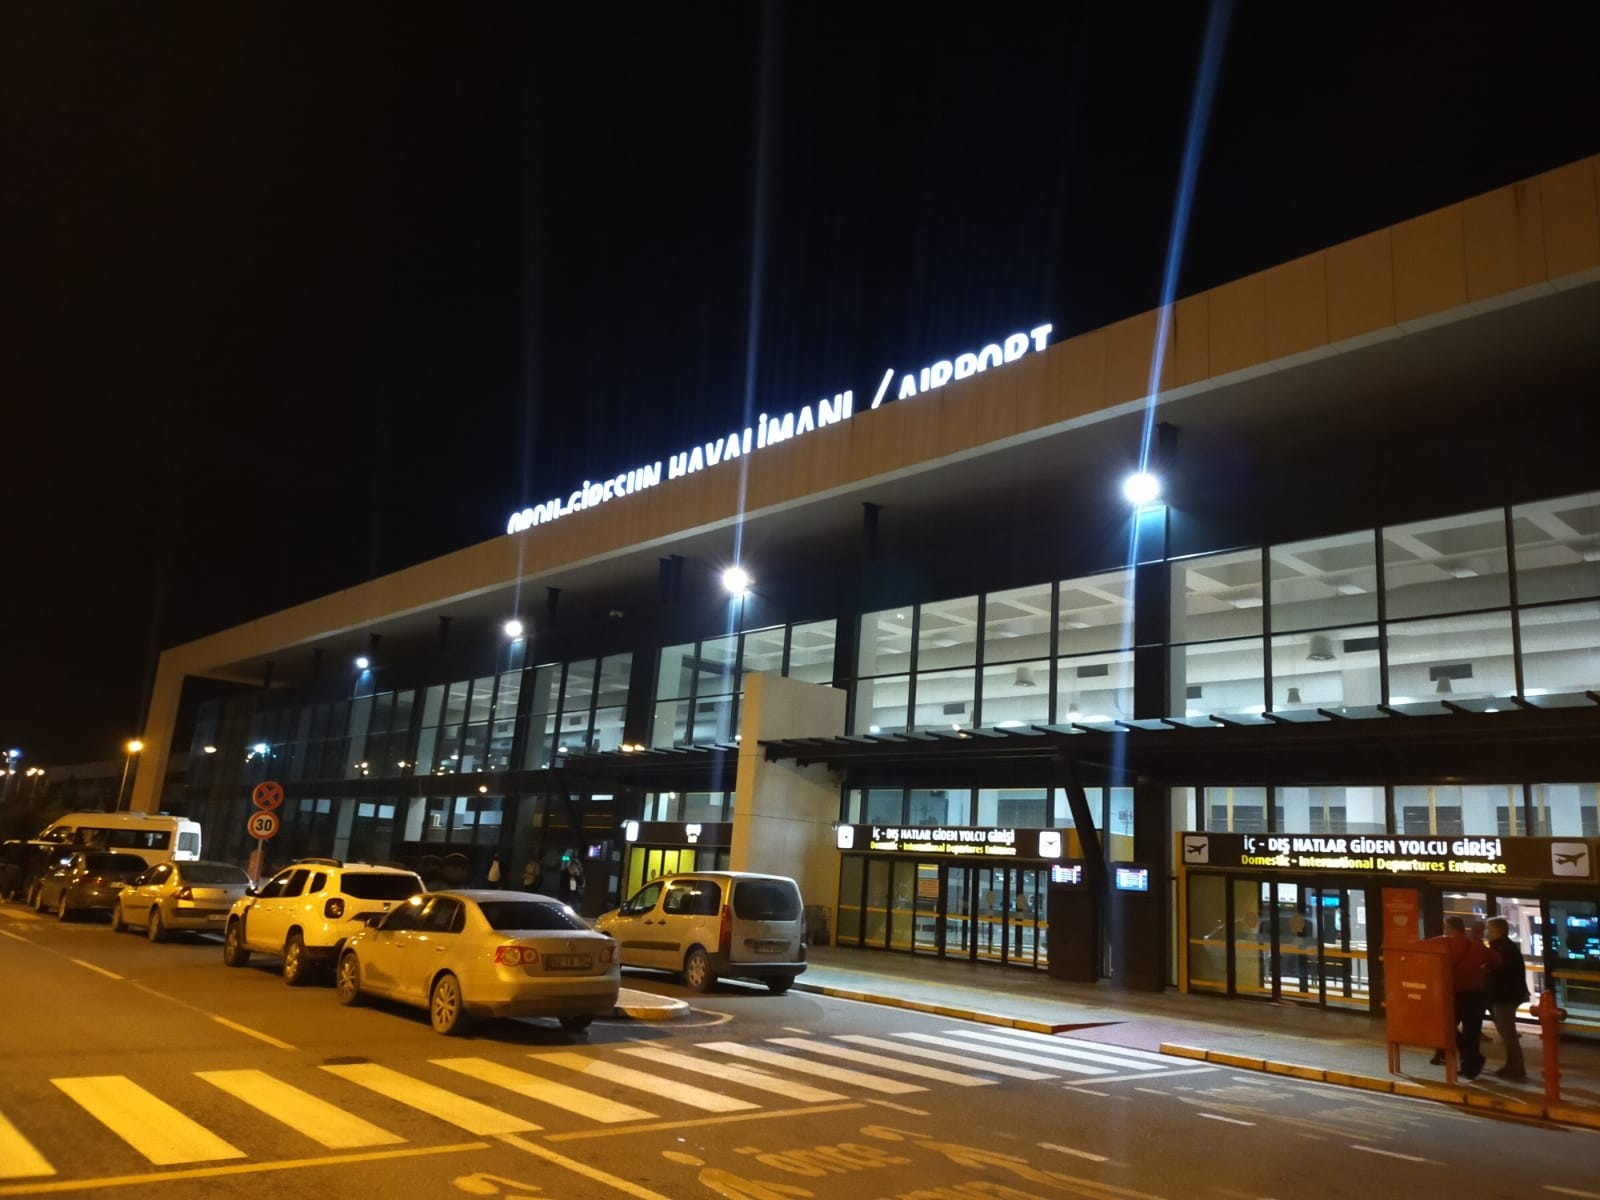 Ordu-Giresun Havalimanı’ndaki bomba ihbarı asılsız çıktı